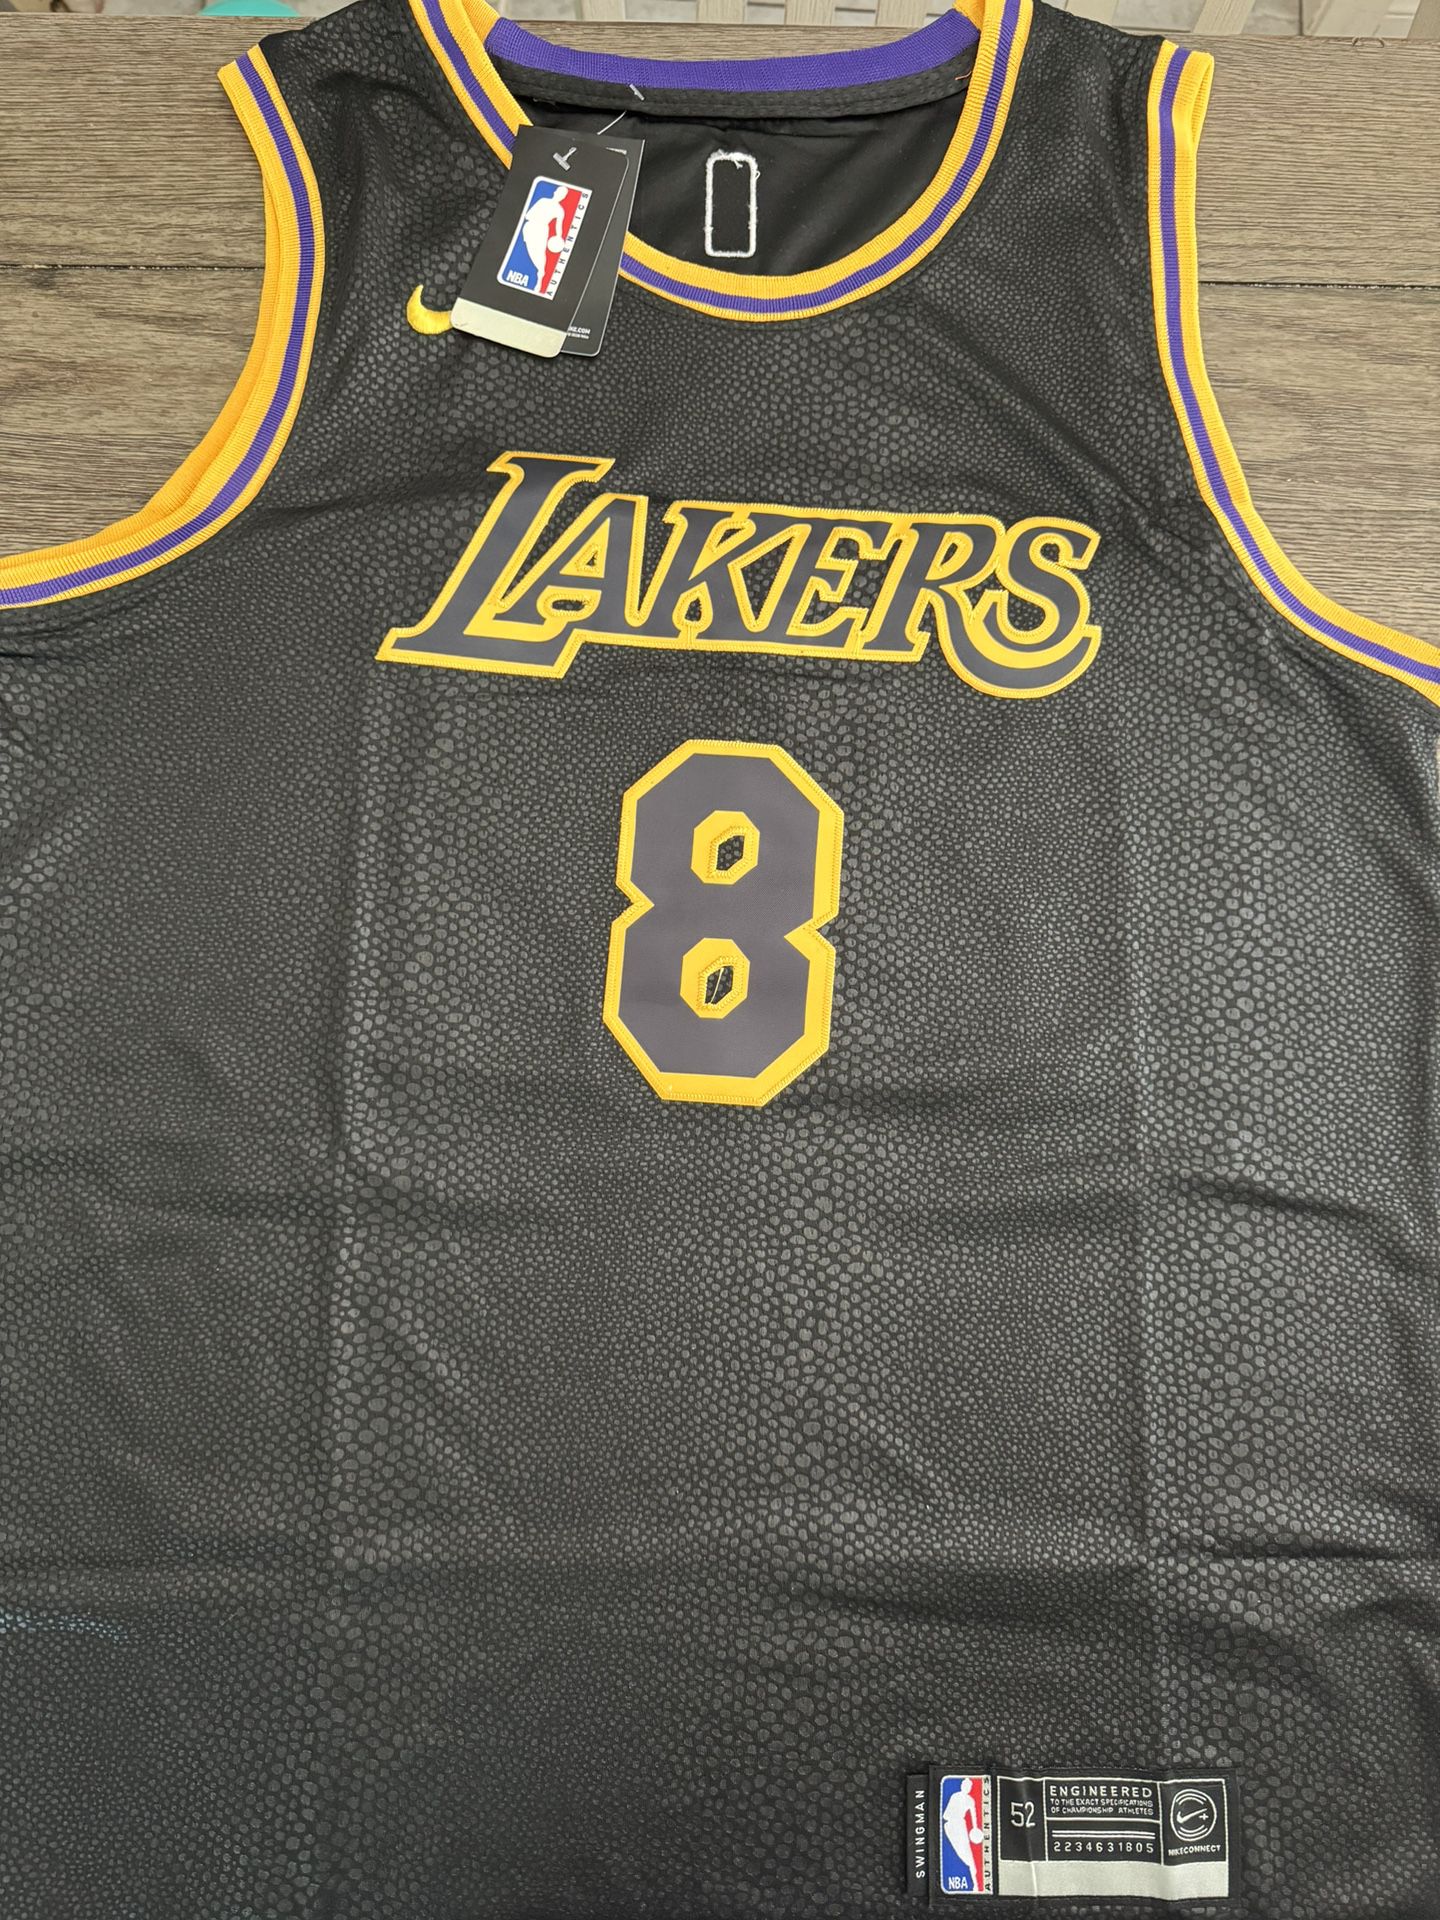 Kobe Lakers 8/24 Jersey Size 52